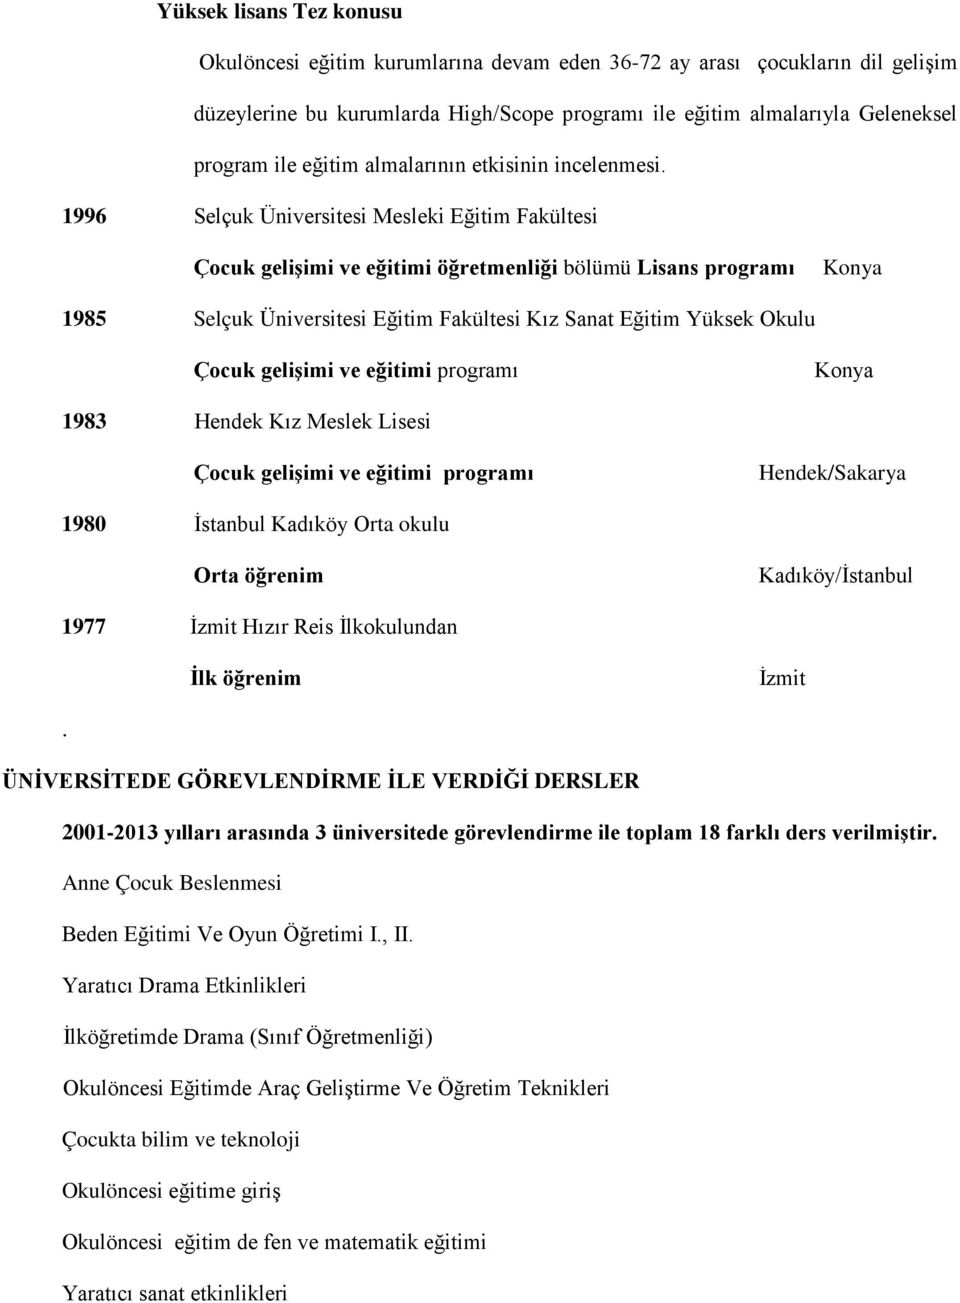 1996 Selçuk Üniversitesi Mesleki Eğitim Fakültesi Çocuk gelişimi ve eğitimi öğretmenliği bölümü Lisans programı Konya 1985 Selçuk Üniversitesi Eğitim Fakültesi Kız Sanat Eğitim Yüksek Okulu Çocuk